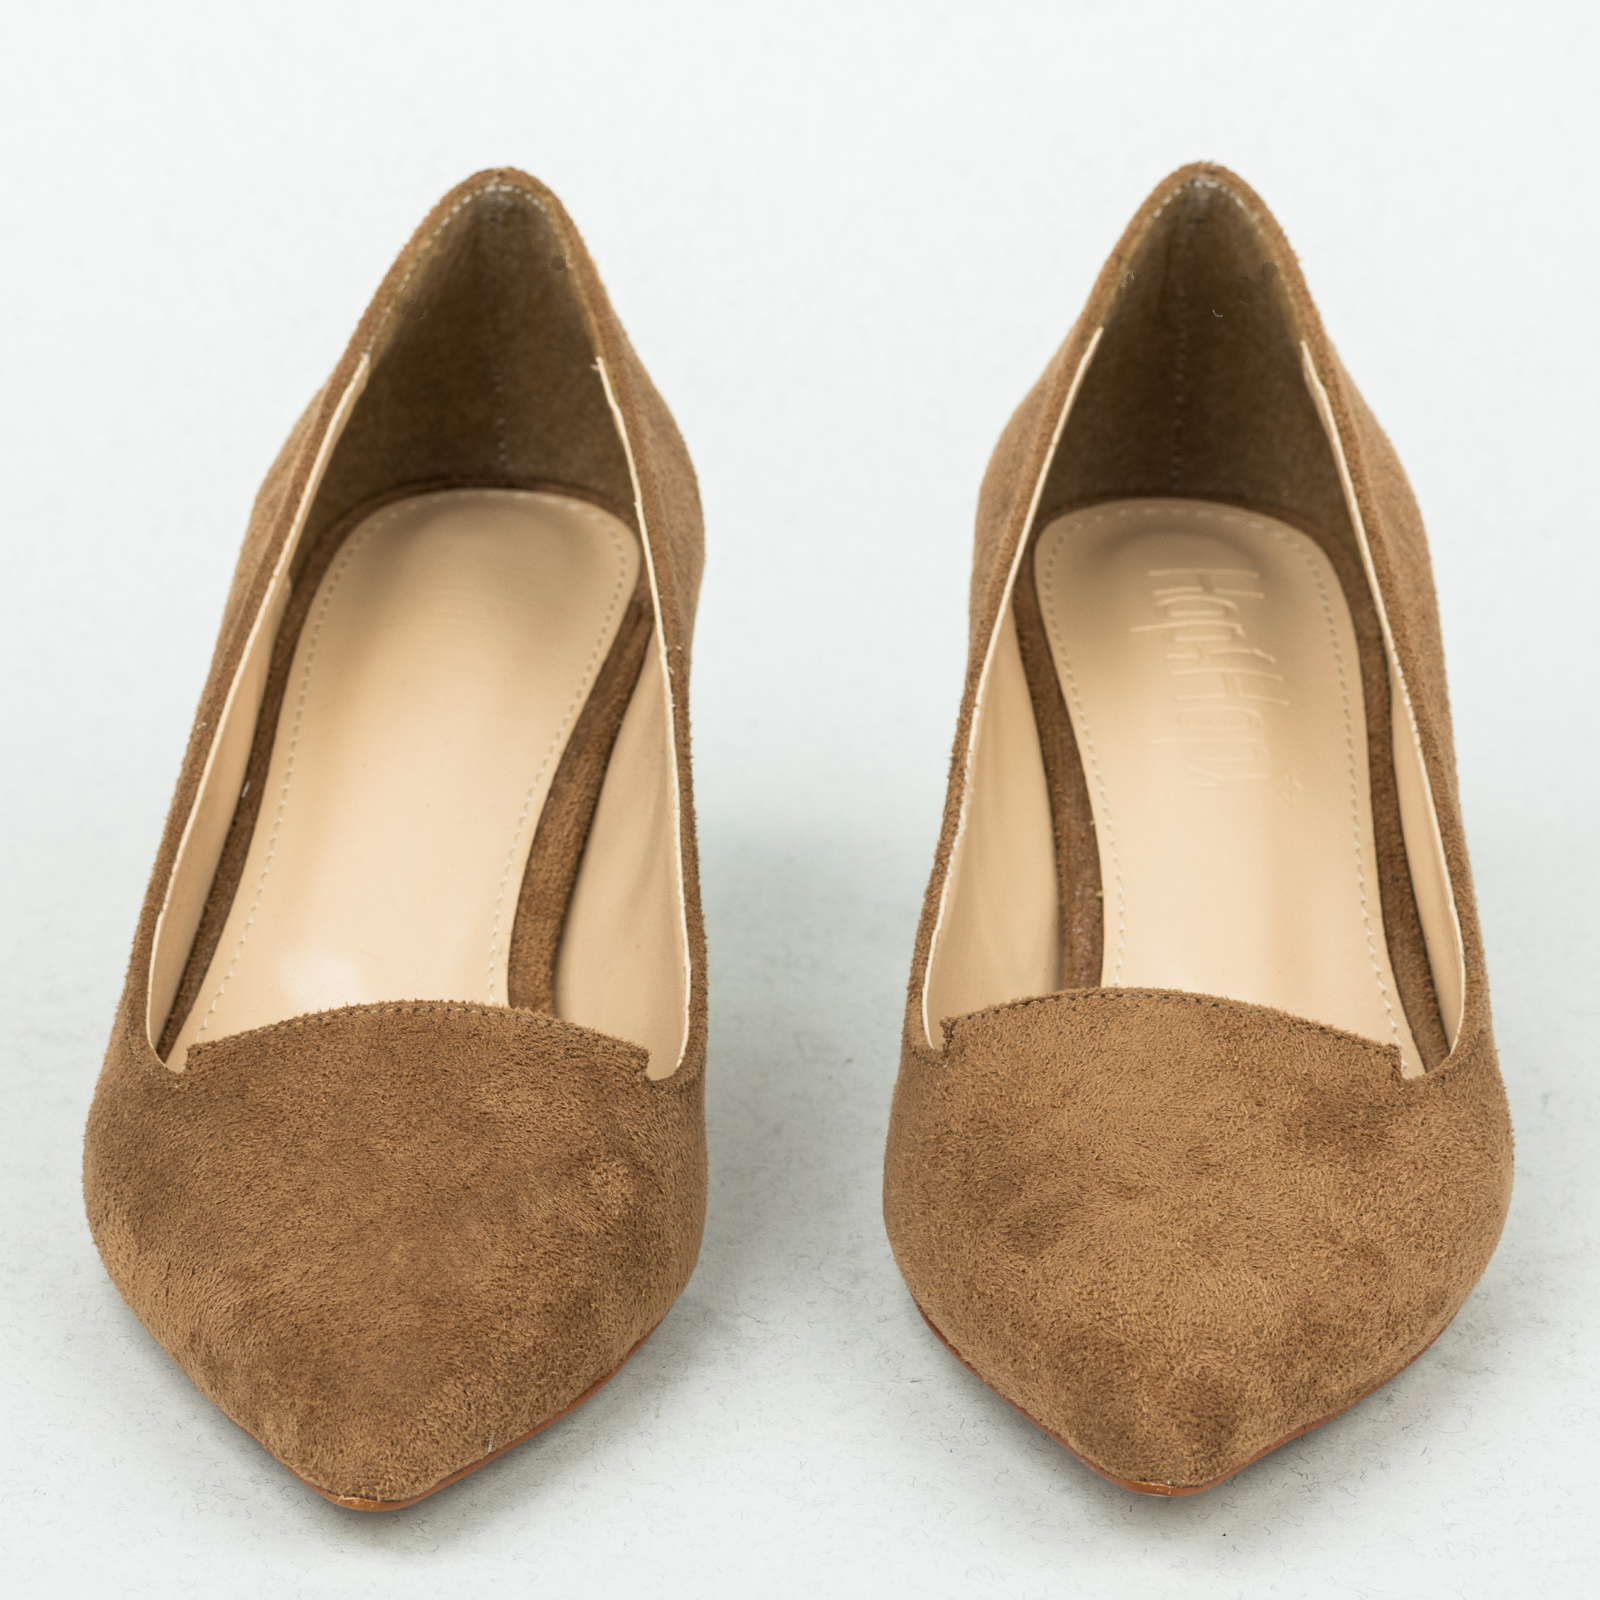 High-heels B171 - BEIGE